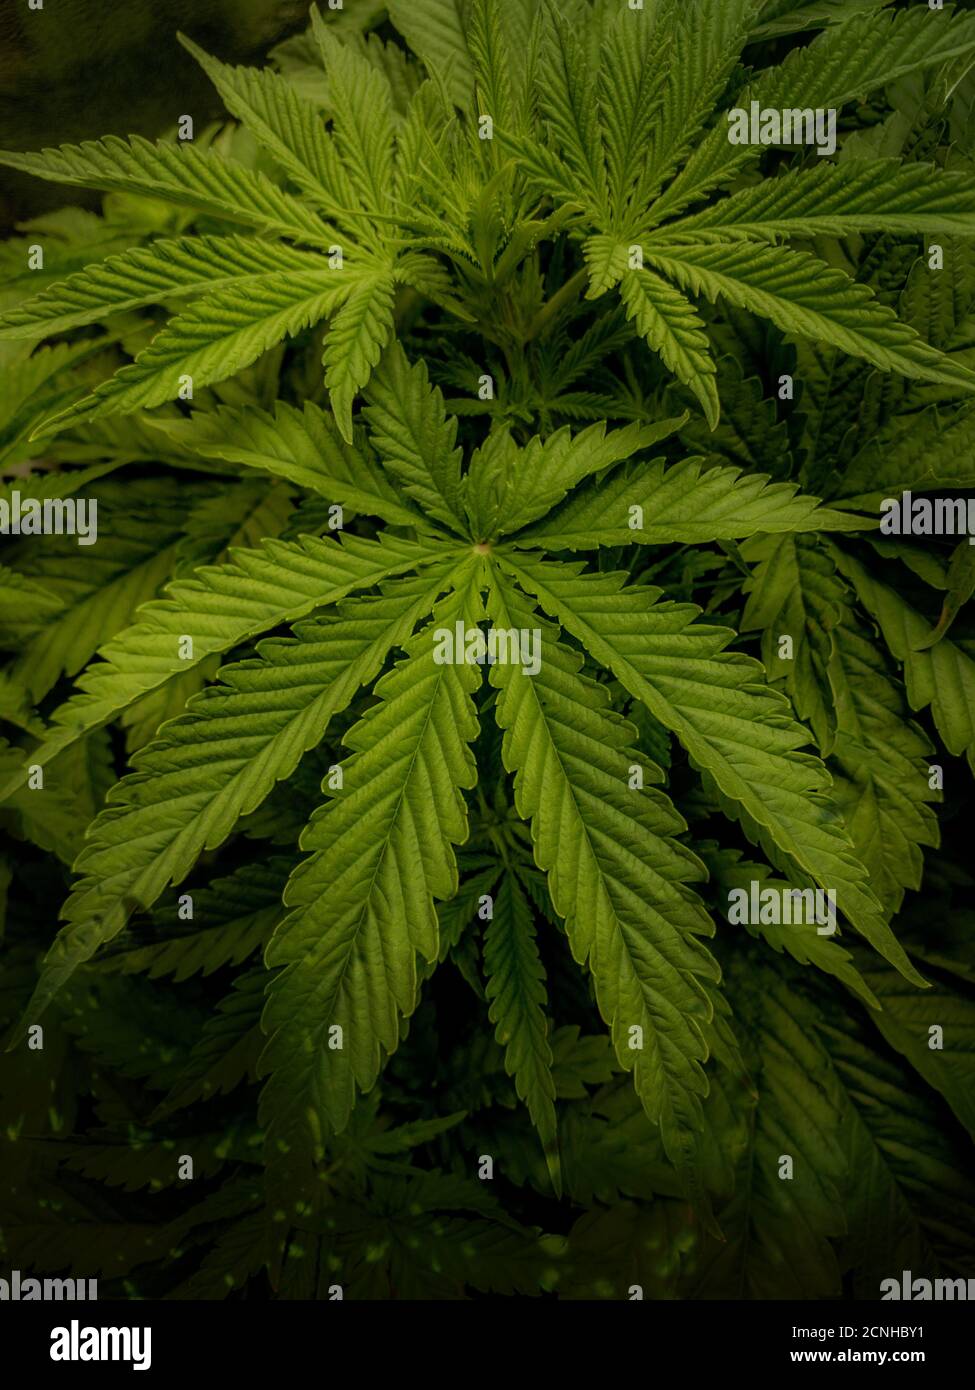 Cannabispflanze Blätter auf dunklem Hintergrund Stockfoto